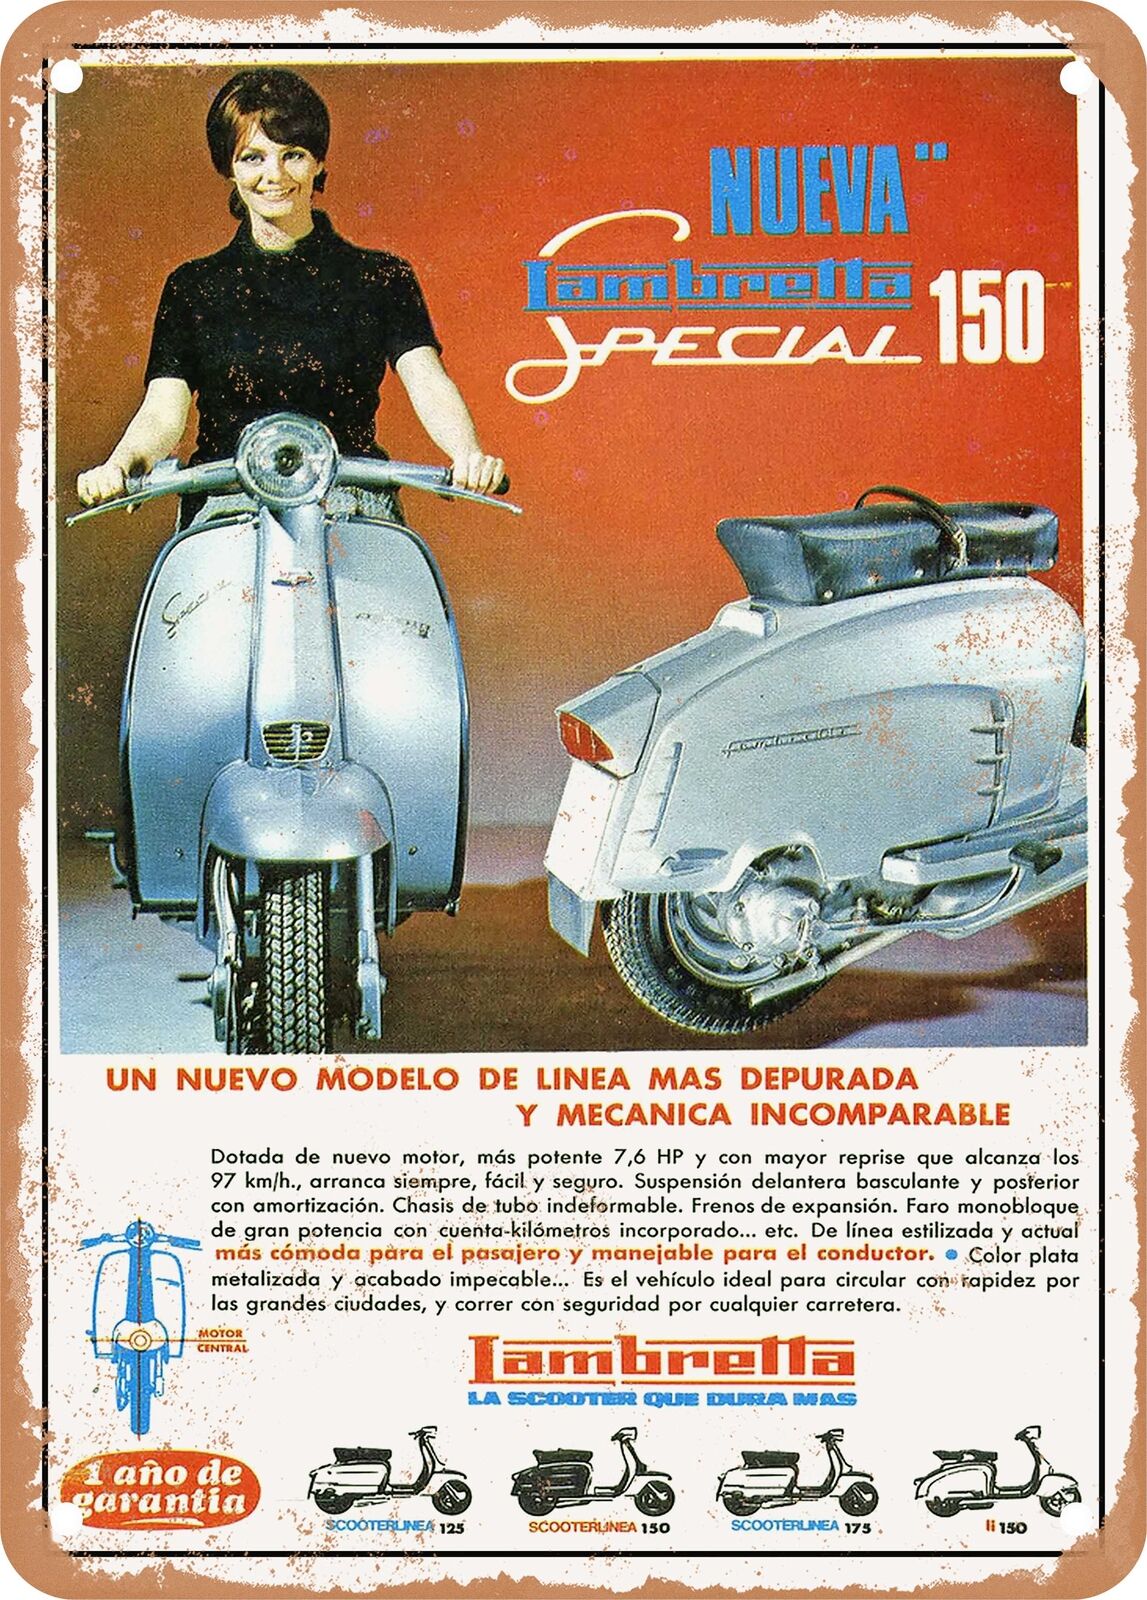 METAL SIGN - 1967 Lambretta Nueva Special 150 Vintage Ad